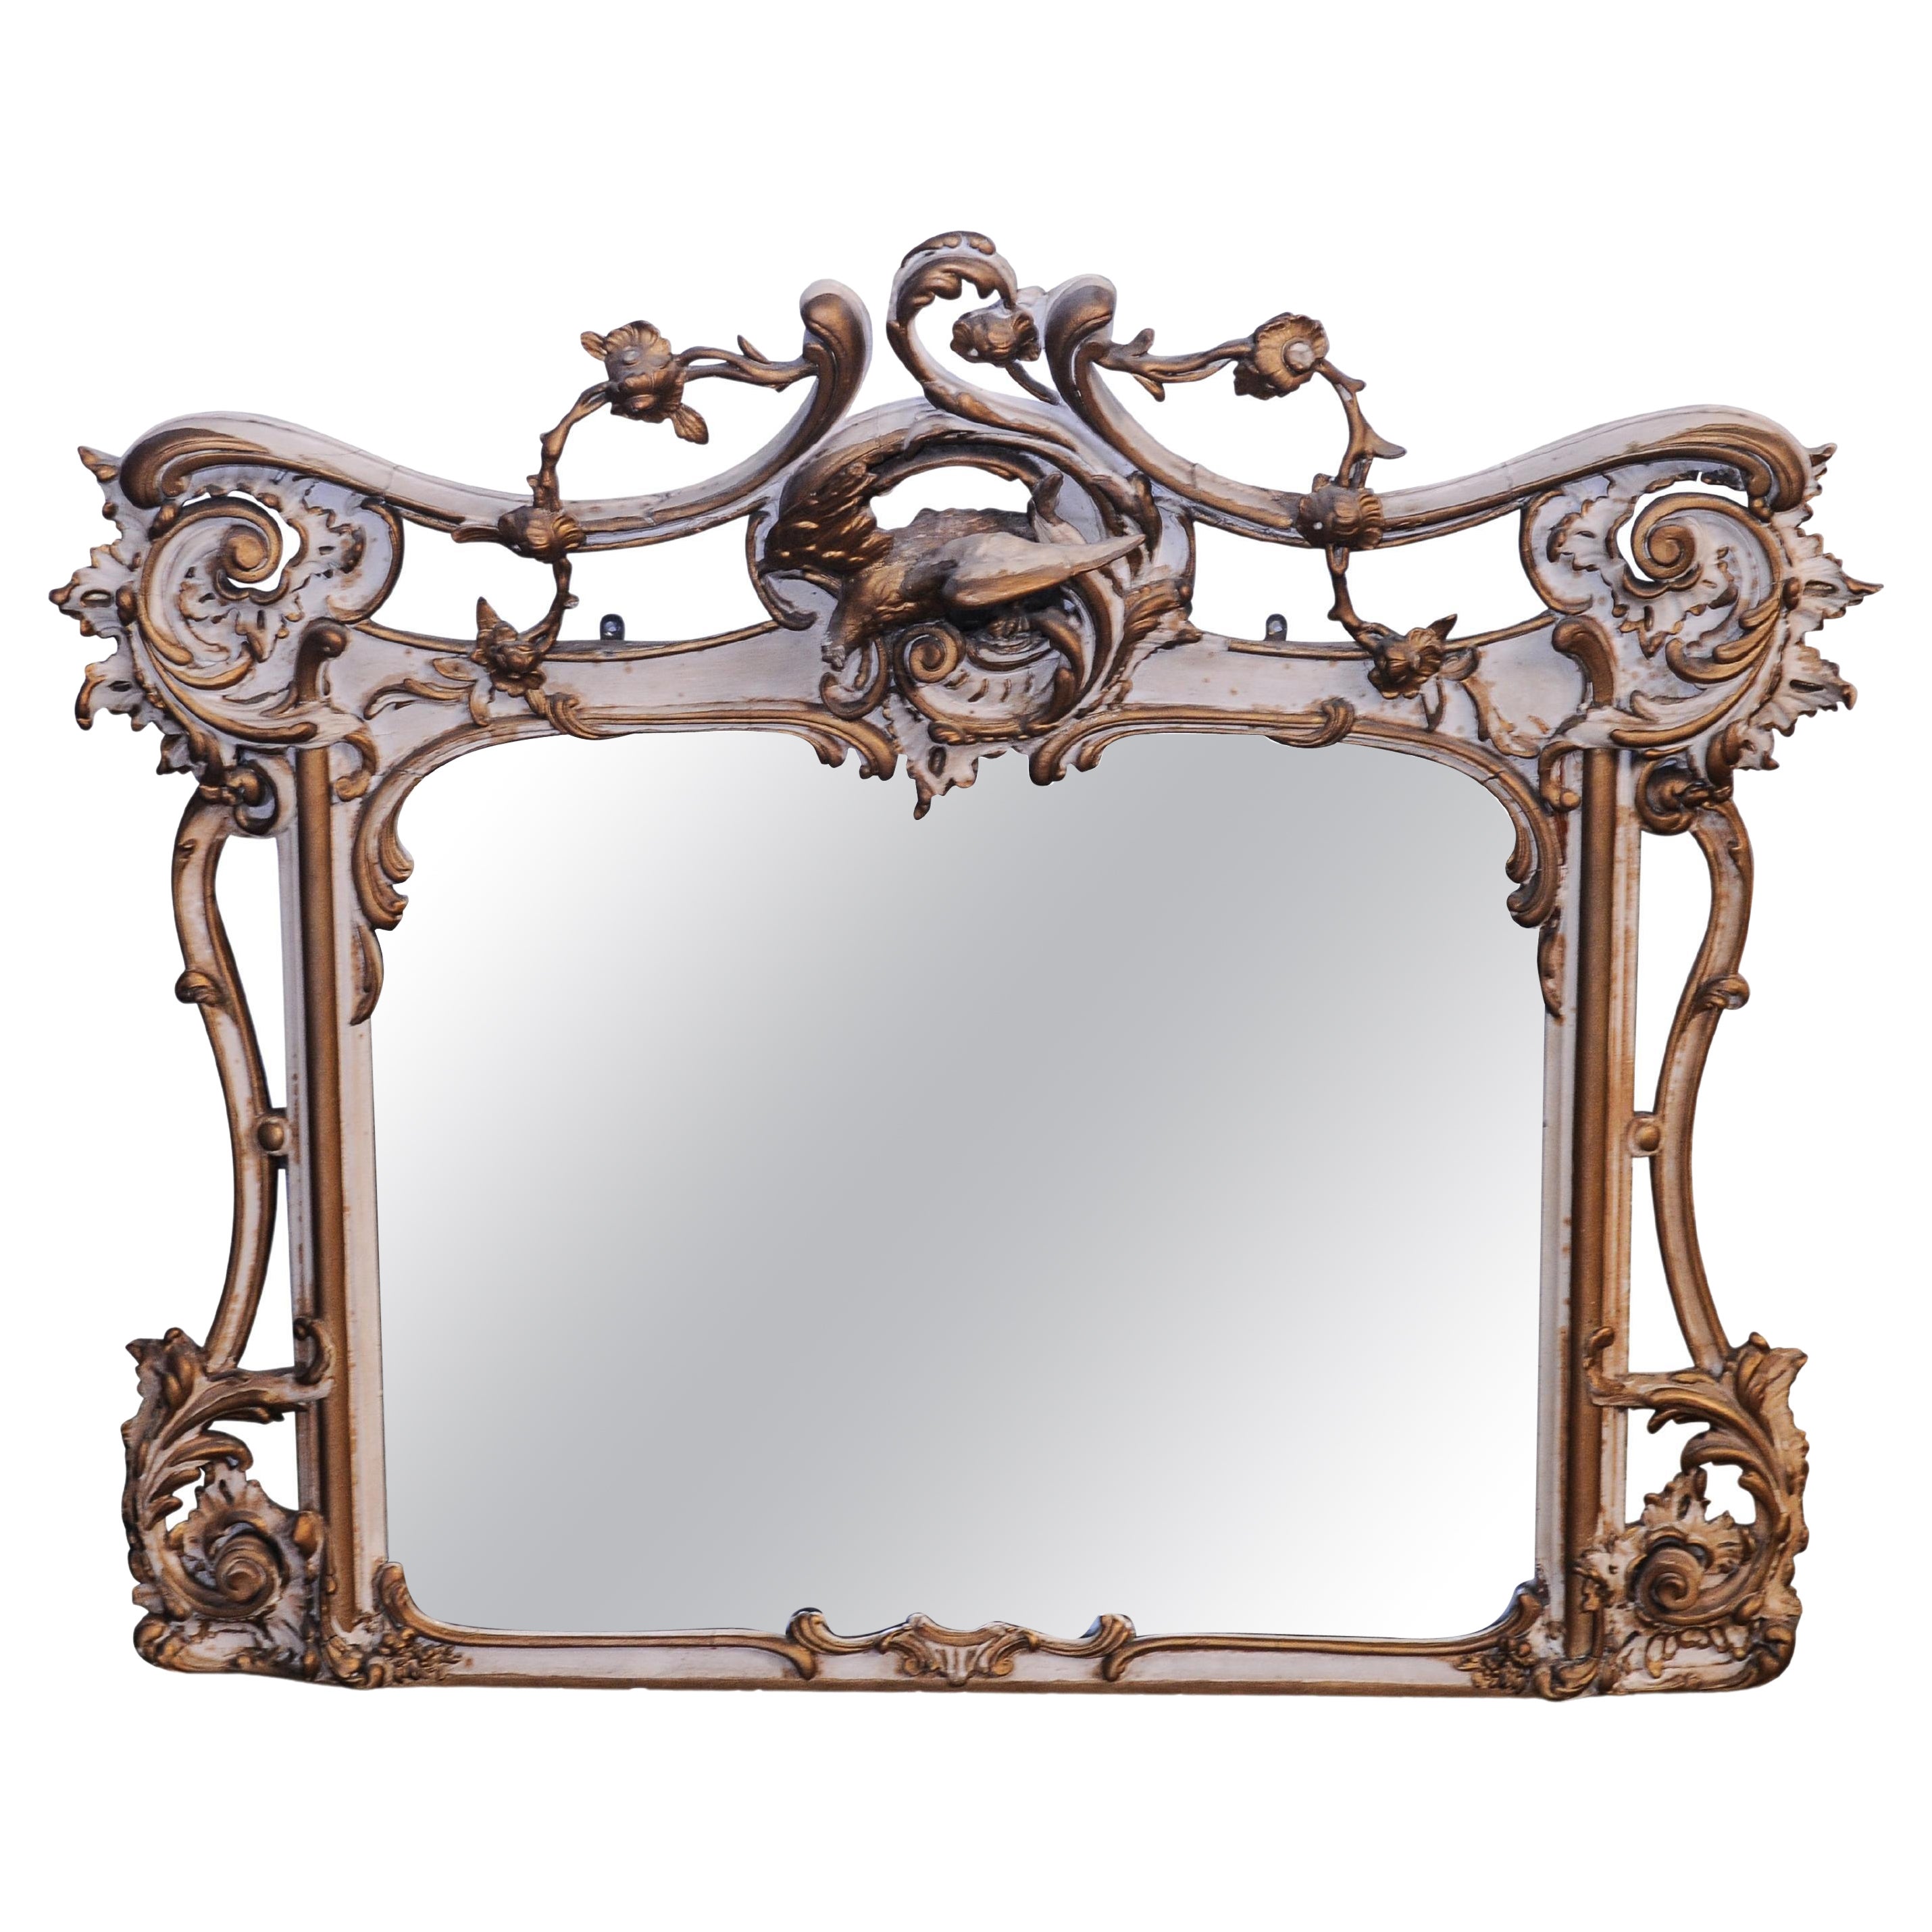 19th Century French Gilt Gesso Rococo Filigree Decorative over Mantel Mirror